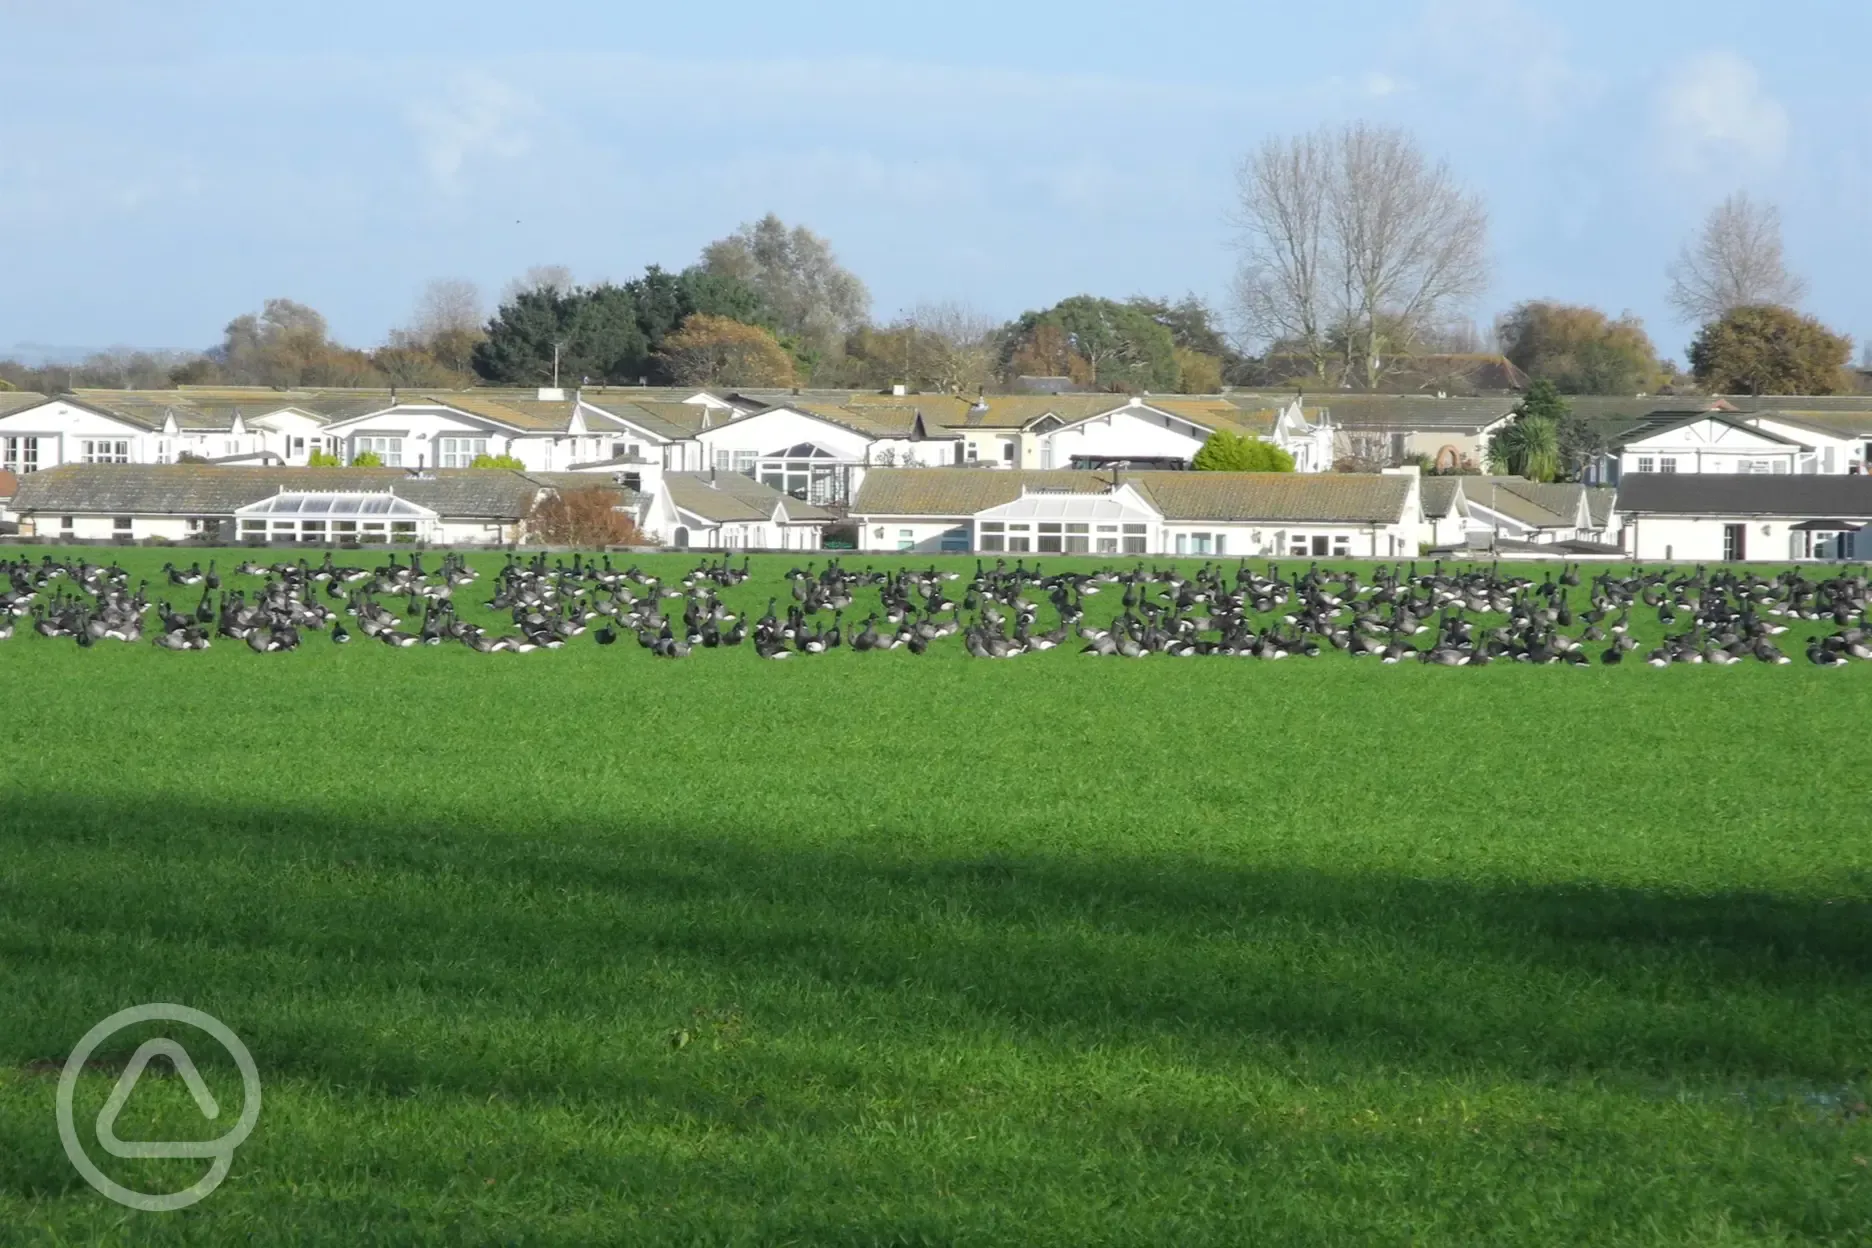 Geese on Mill Farm field